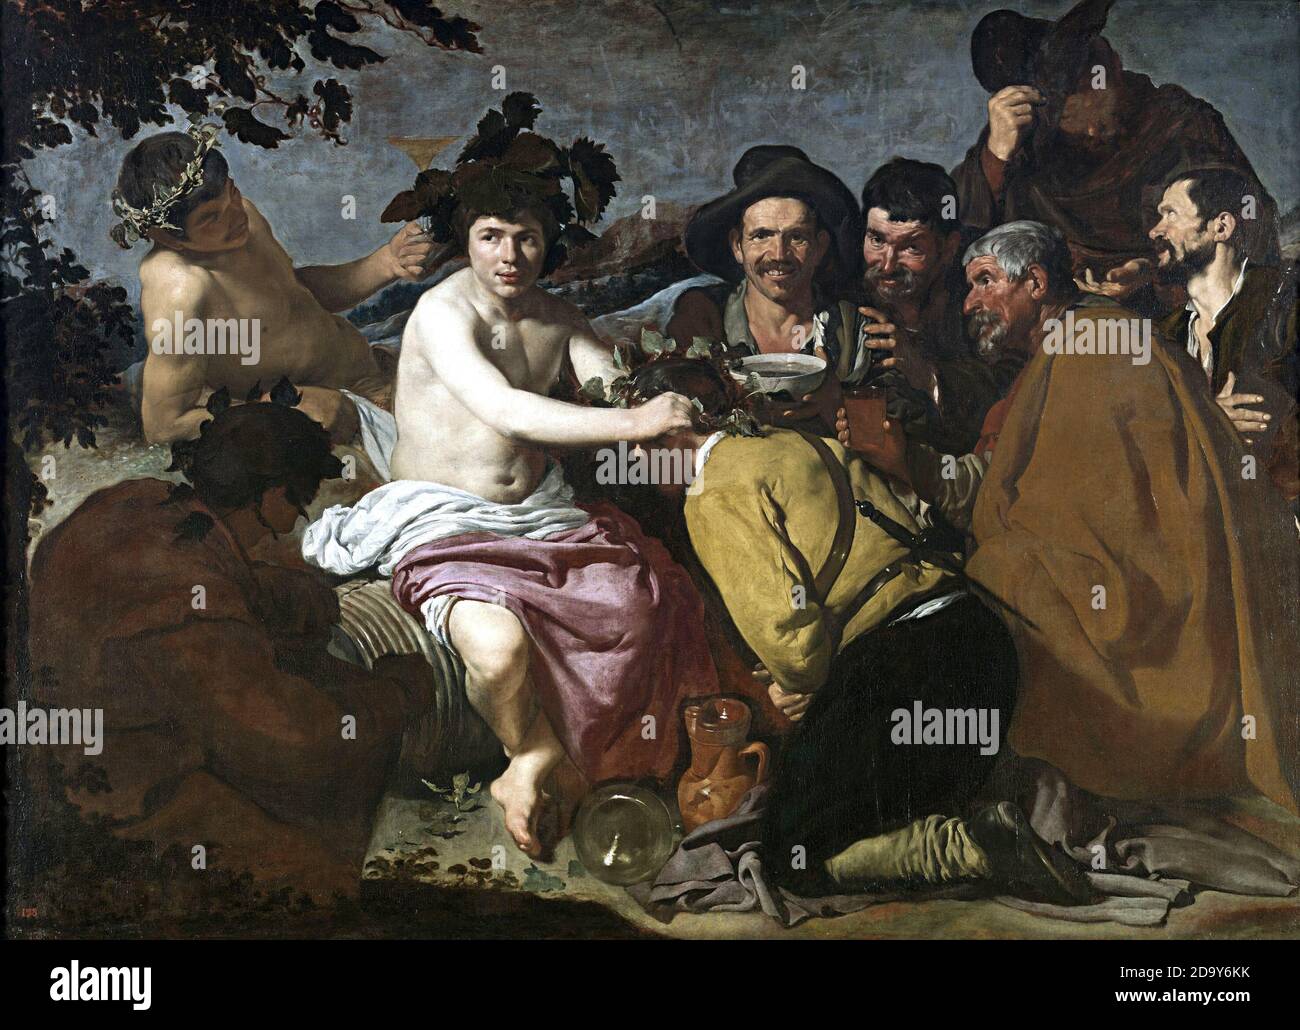 Titel: Triumph des Bacchus Ersteller: Diego Rodriguez de Silva y Velazquez Datum: 1628 Medium: Öl auf Leinwand Größe: 165 x 225cm Ort: Prado, Madrid Stockfoto